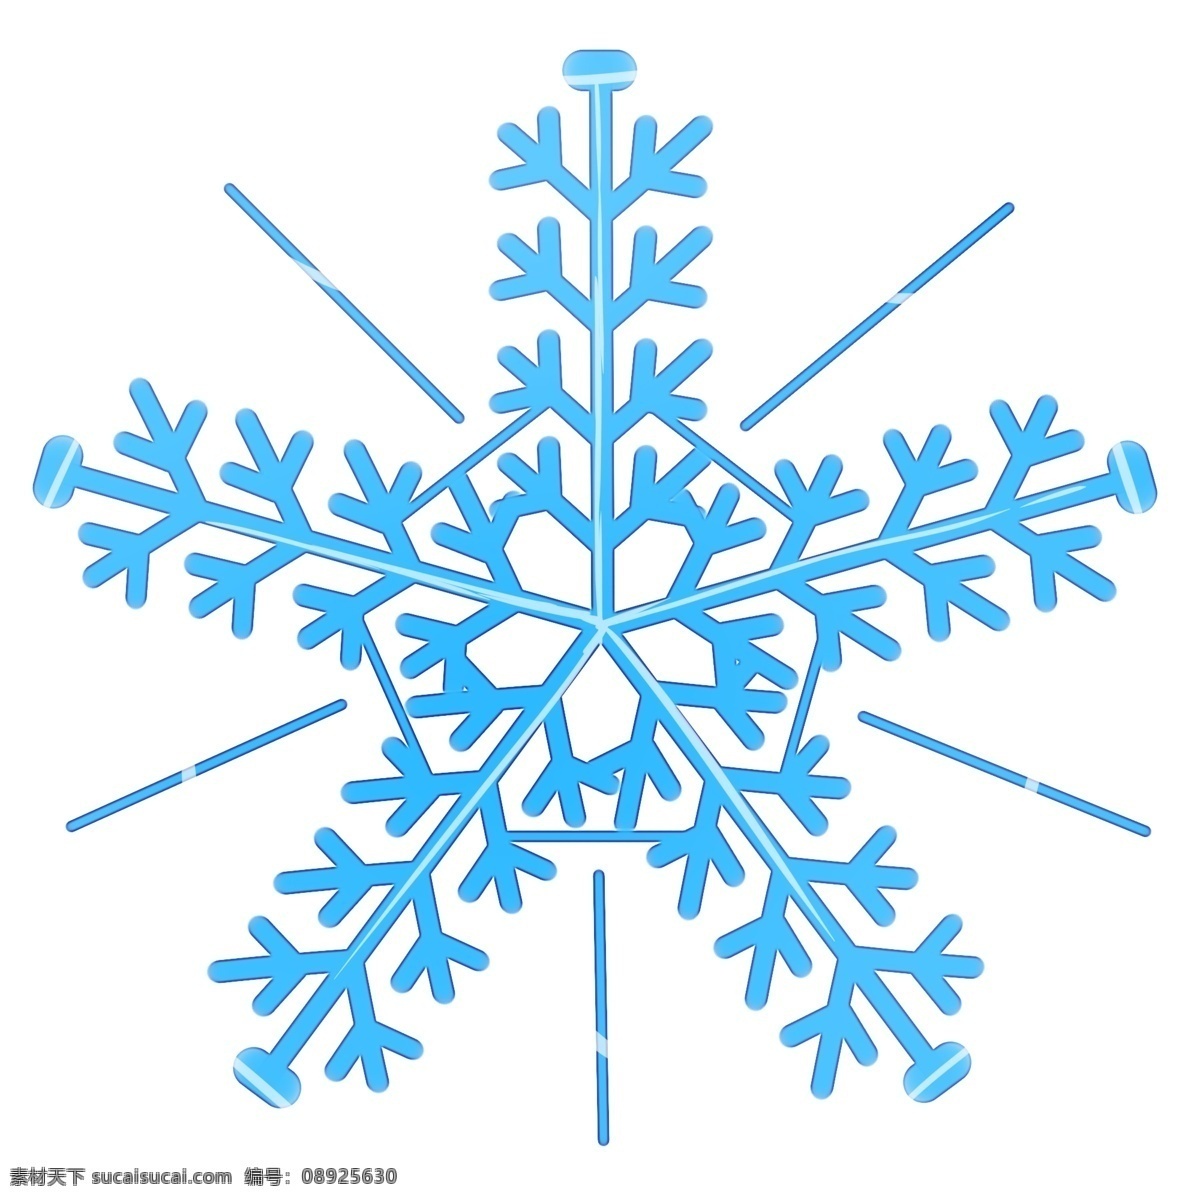 冬天下雪 雪花的形状 冬日 晶莹 雪花 形状 蓝色雪花 晶莹雪花 亮晶晶的雪花 原创雪花图形 寒冷